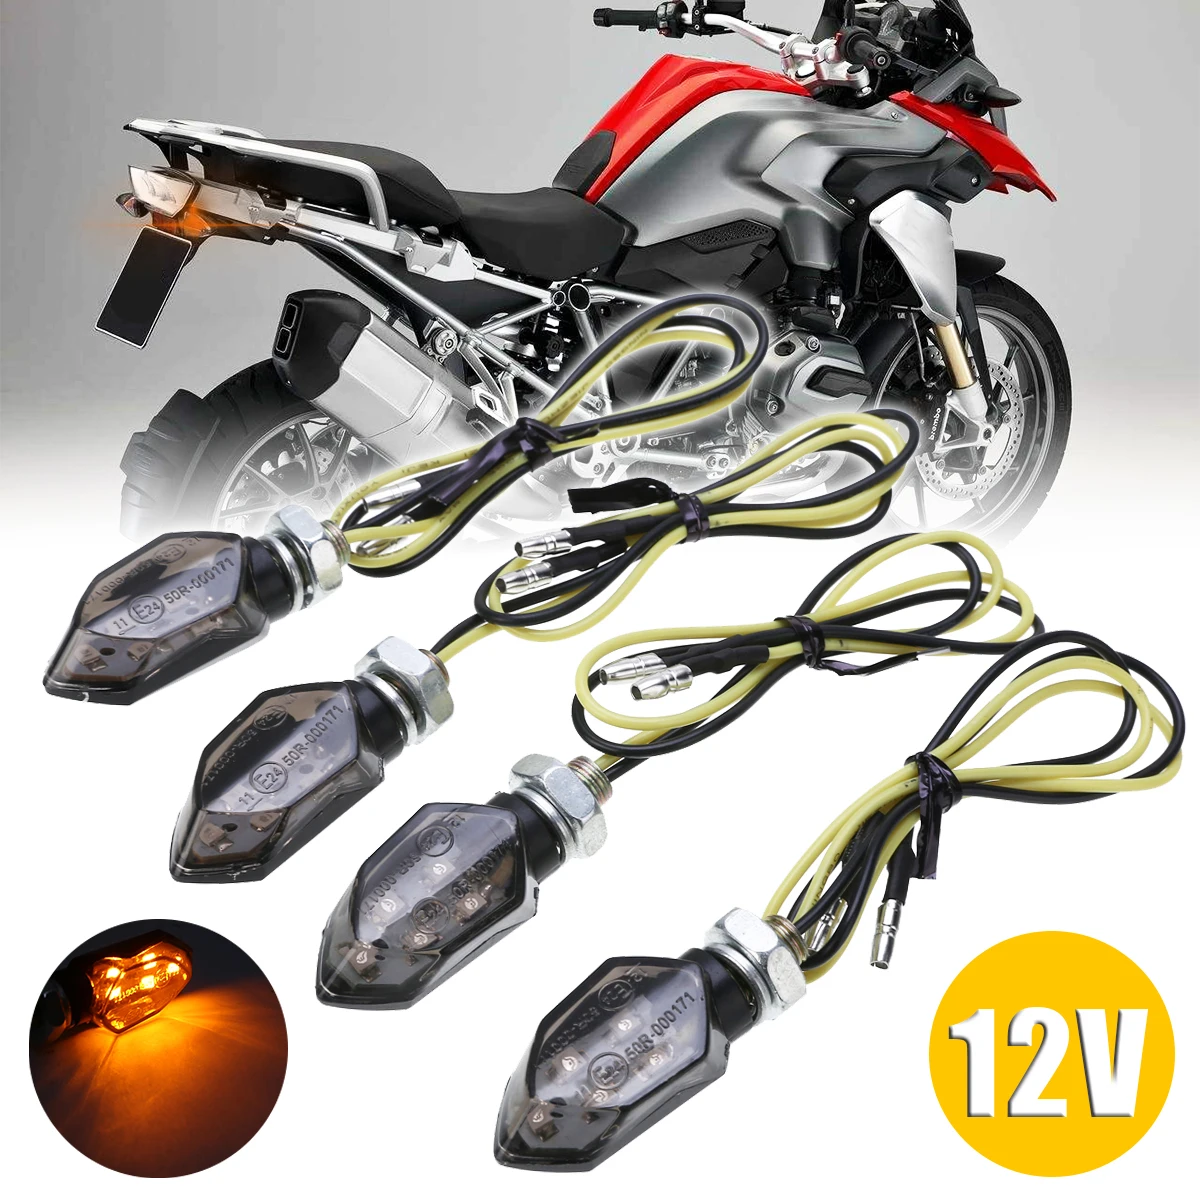 4 шт. световой сигнал поворота для мотоцикла 5 светодиодов SMD 12 В |